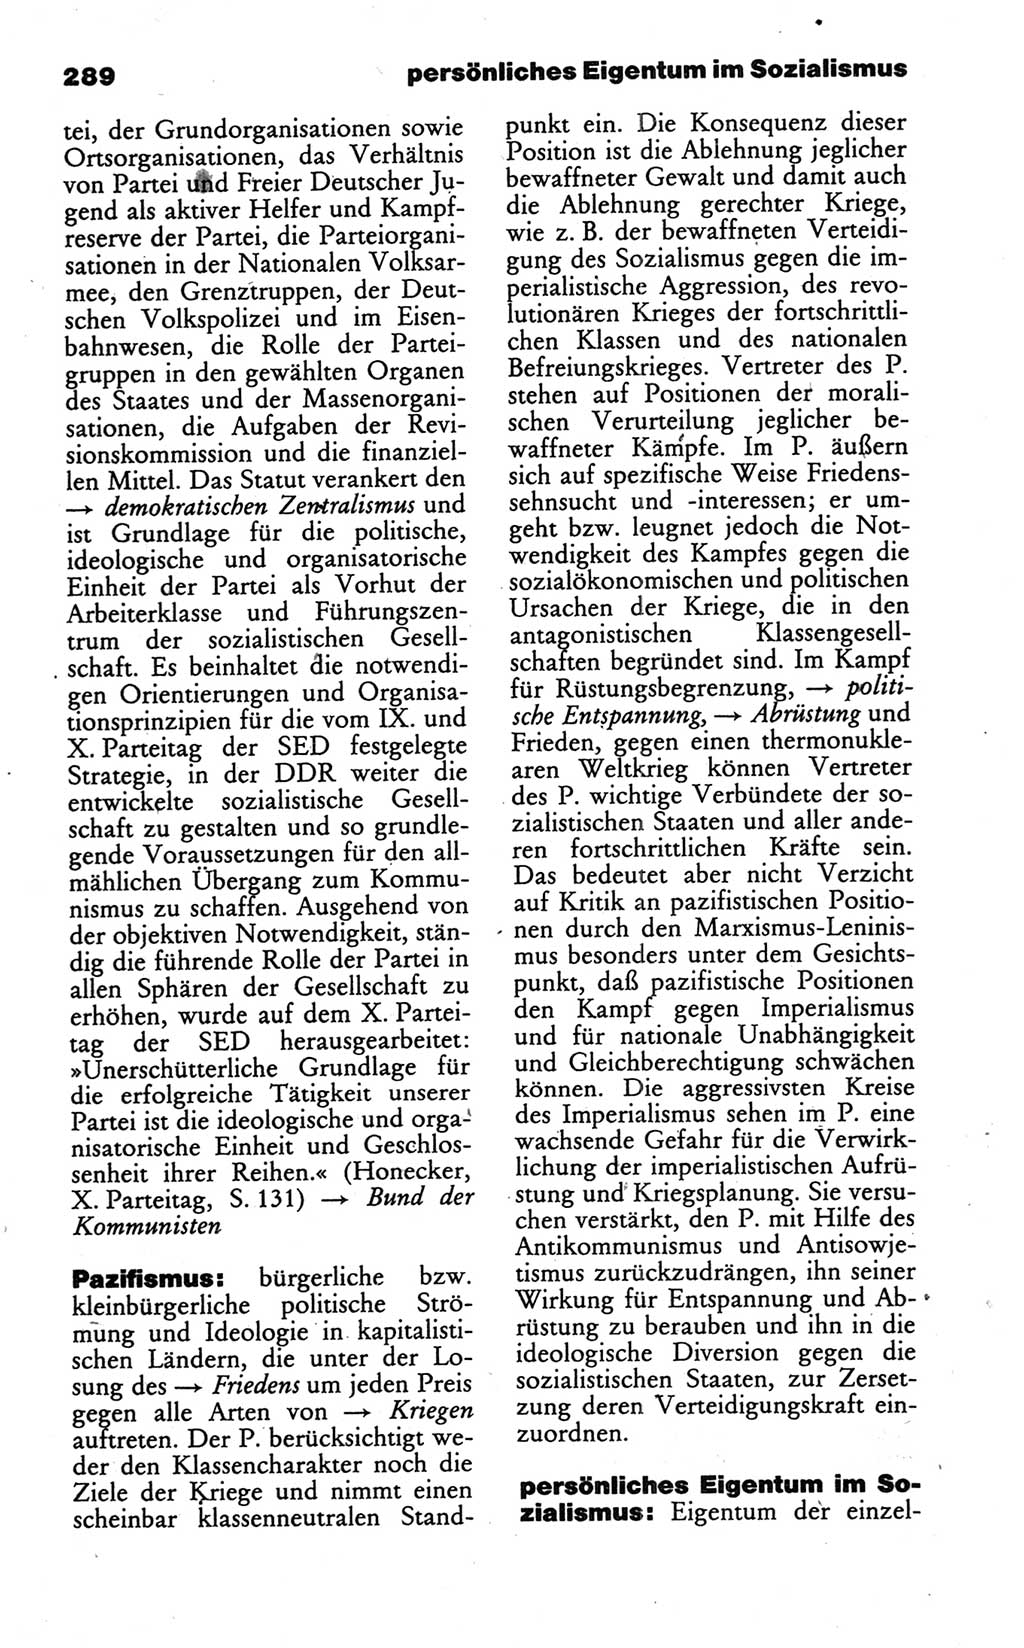 Wörterbuch des wissenschaftlichen Kommunismus [Deutsche Demokratische Republik (DDR)] 1986, Seite 289 (Wb. wiss. Komm. DDR 1986, S. 289)